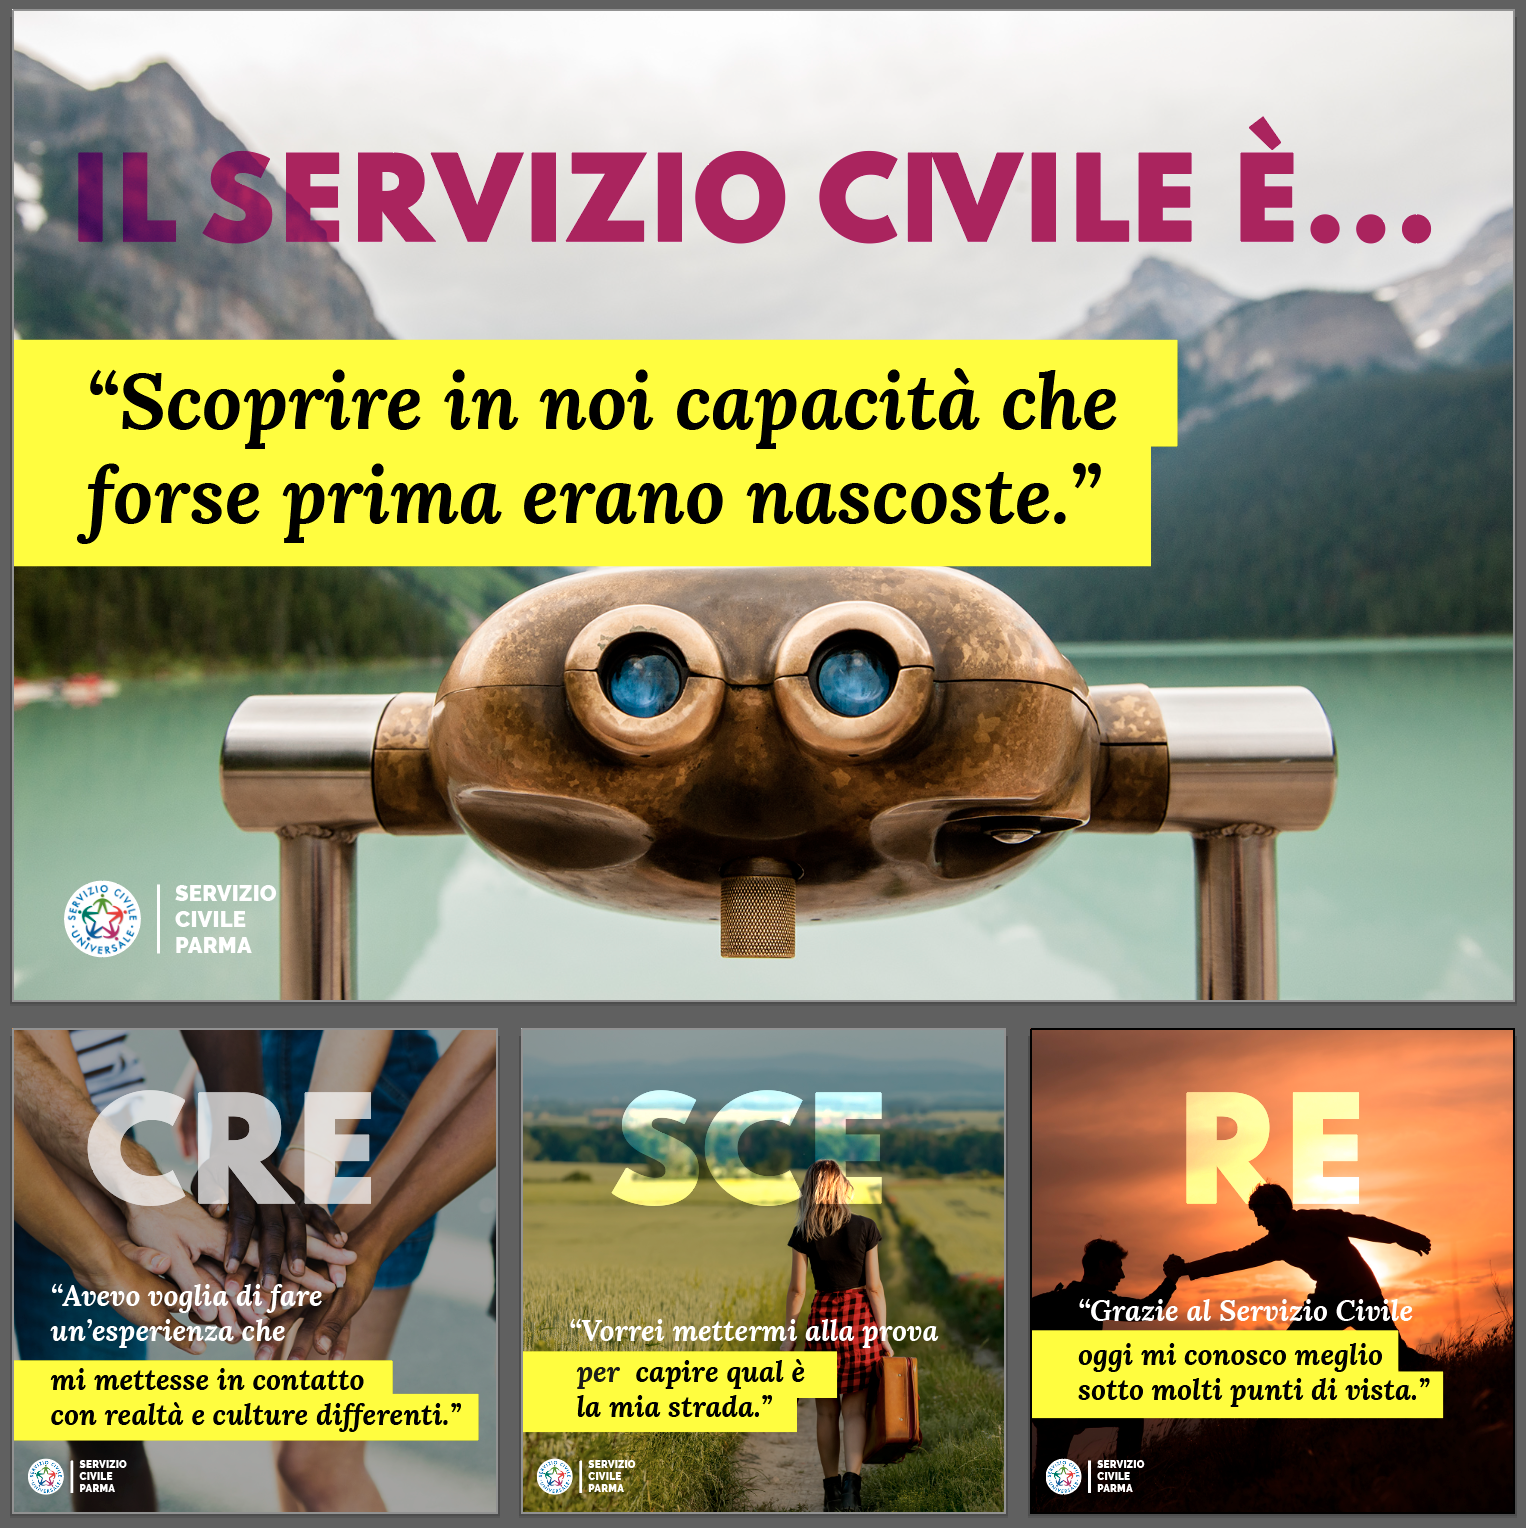 http://www.serviziocivileparma.it/web/il-servizio-civile-e-crescita/